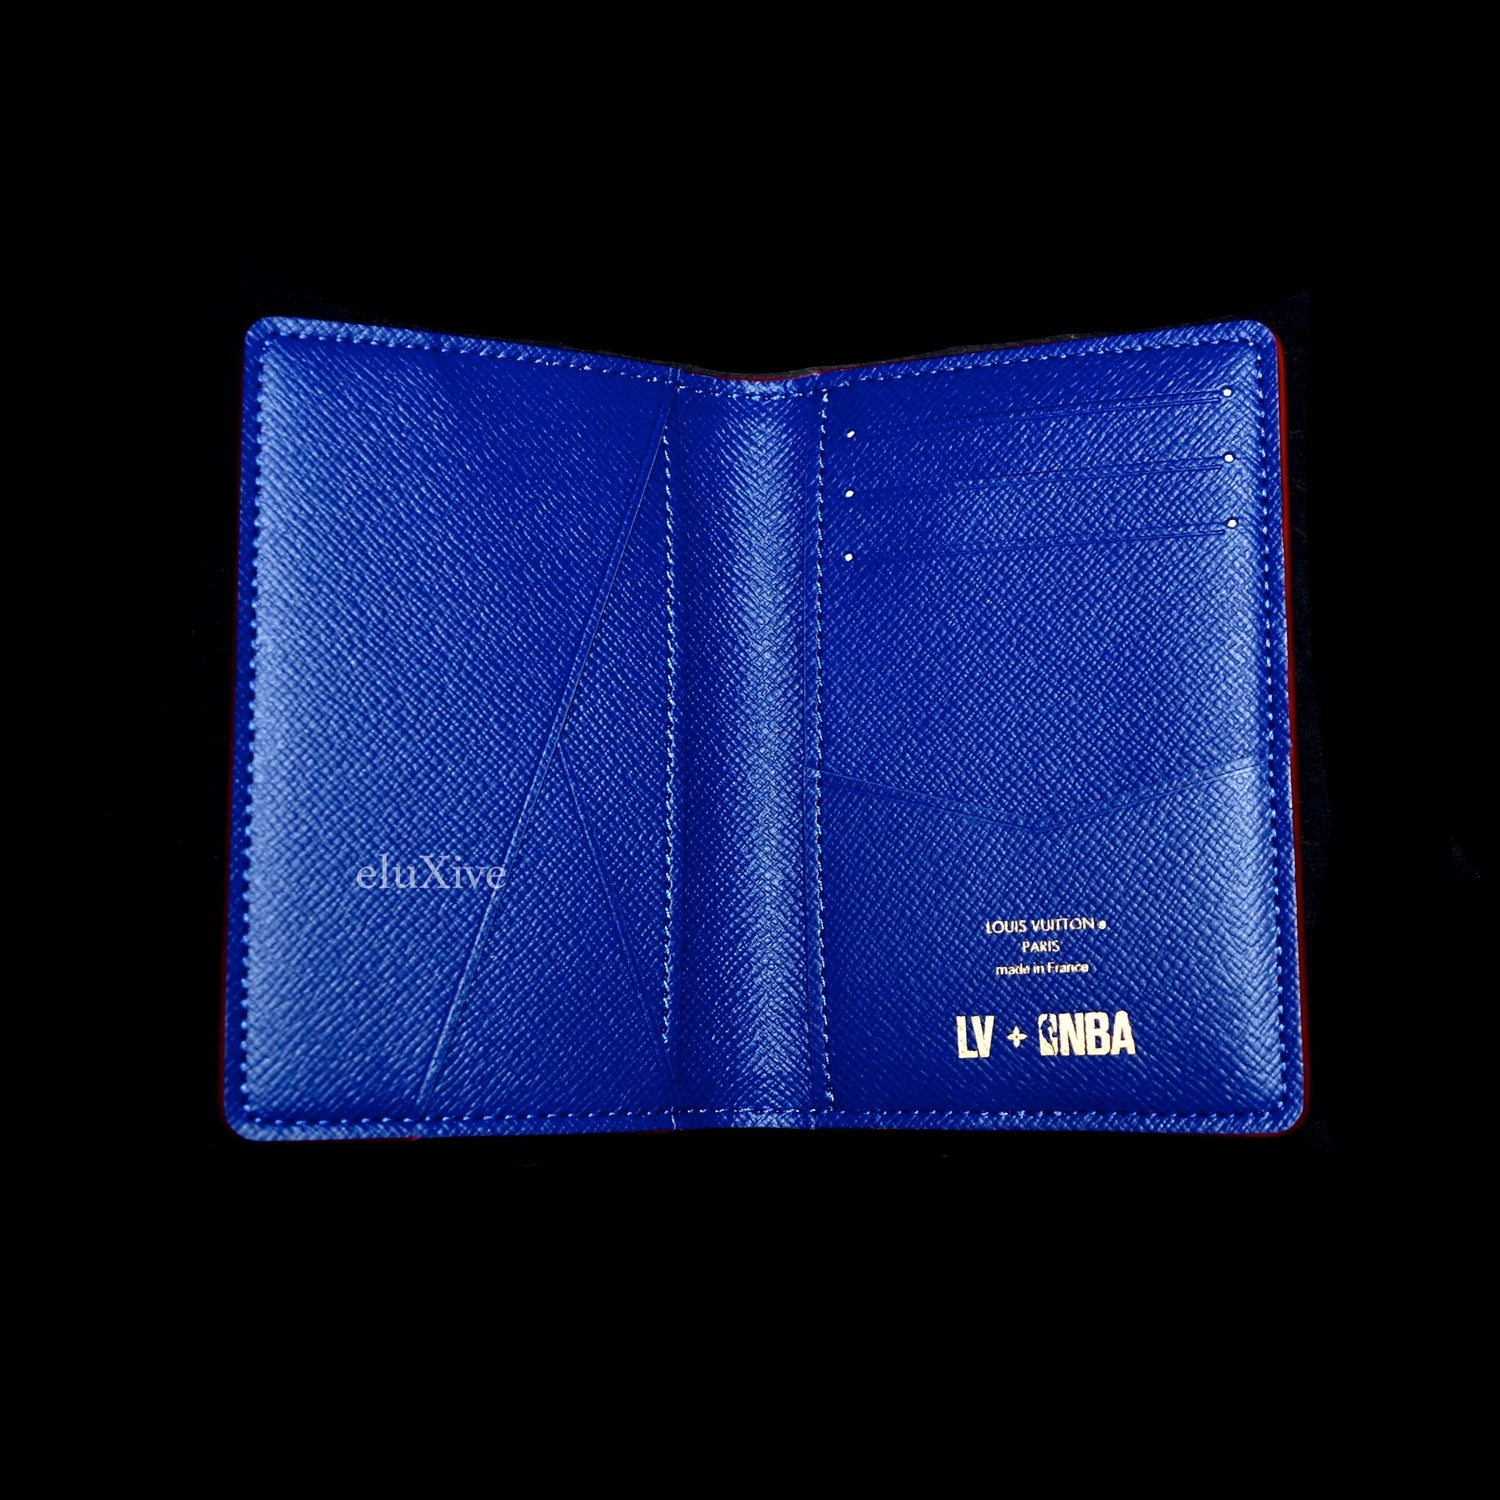 Louis Vuitton x NBA - Monogram Pocket Organizer Wallet (White) – eluXive